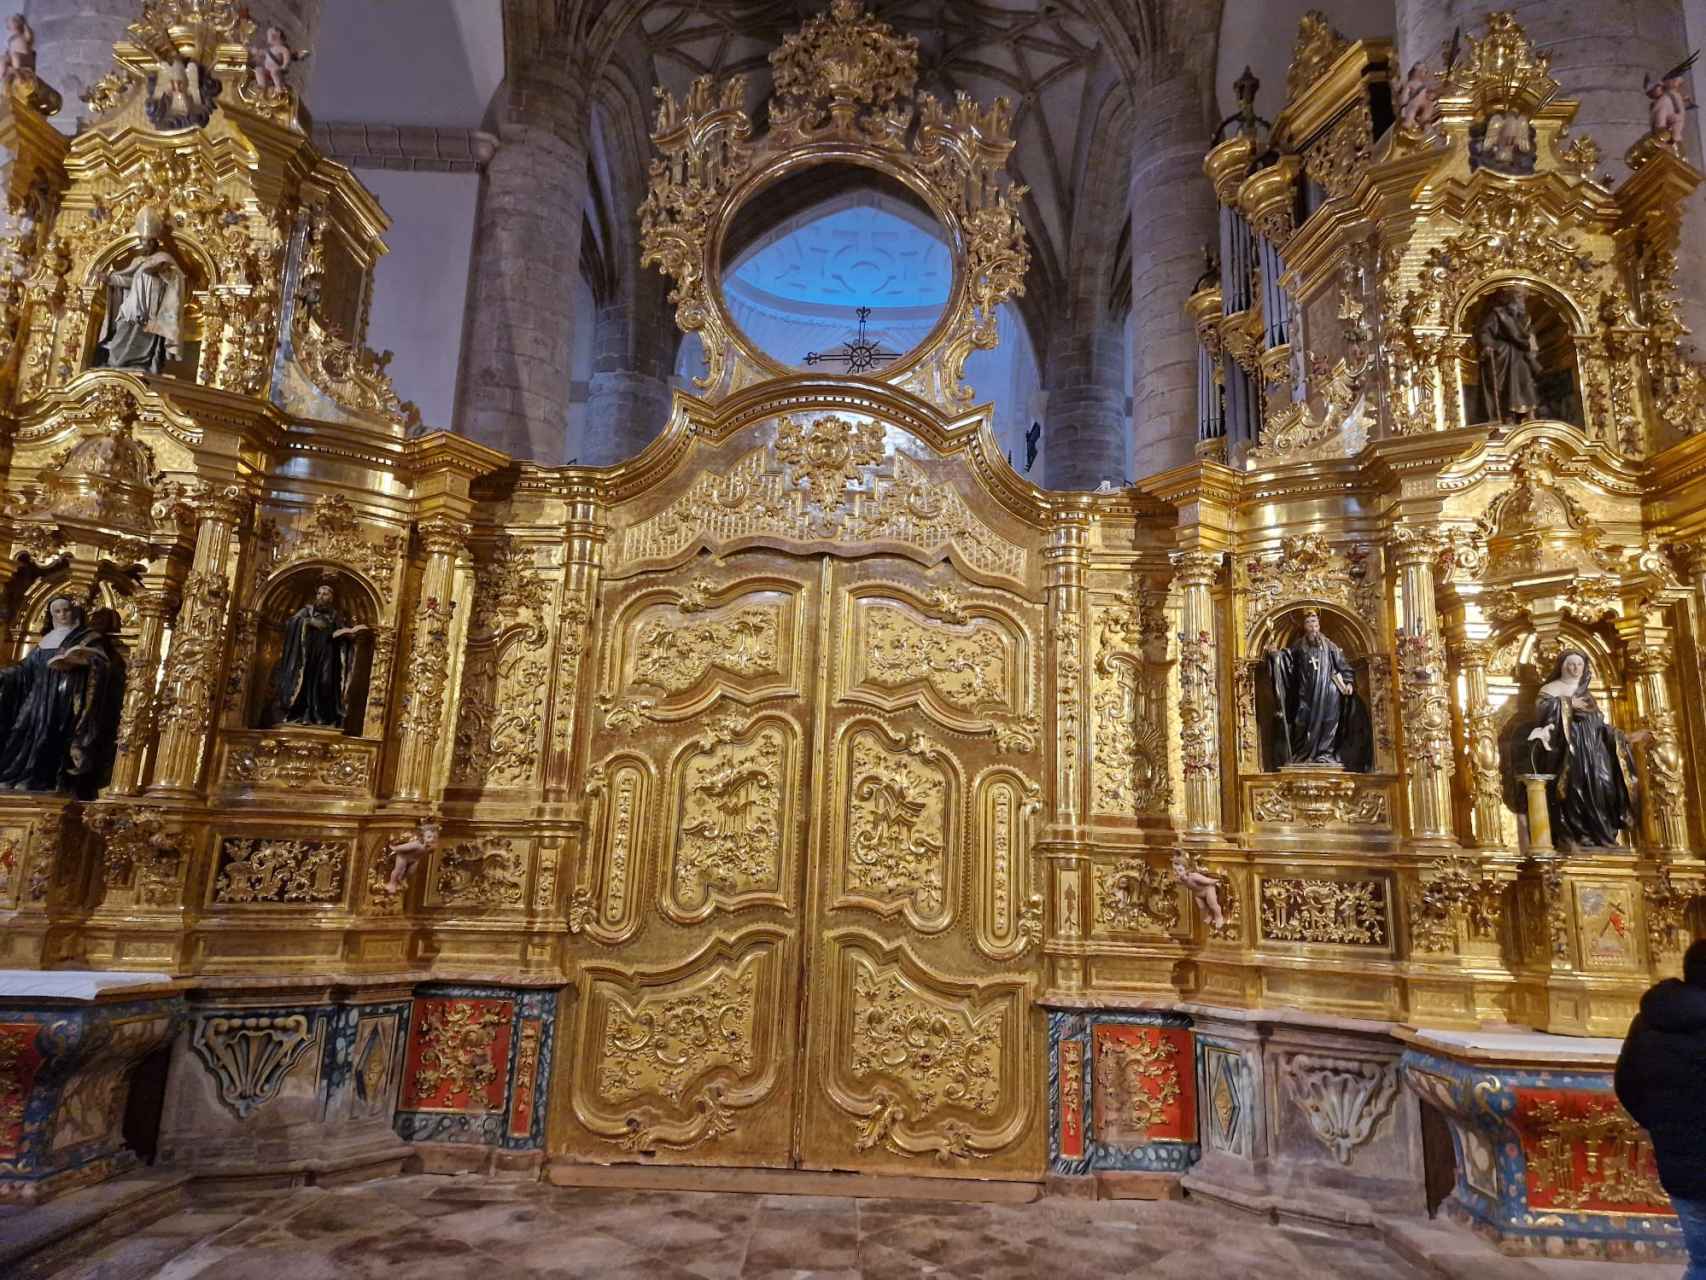 La actual puerta rococó de acceso al altar se añadió en el siglo XVIII en sustitución de la antigua reja. Así se daba mayor privacidad a los monjes benedictinos que habitaban entonces en el monasterio / A. VIRI